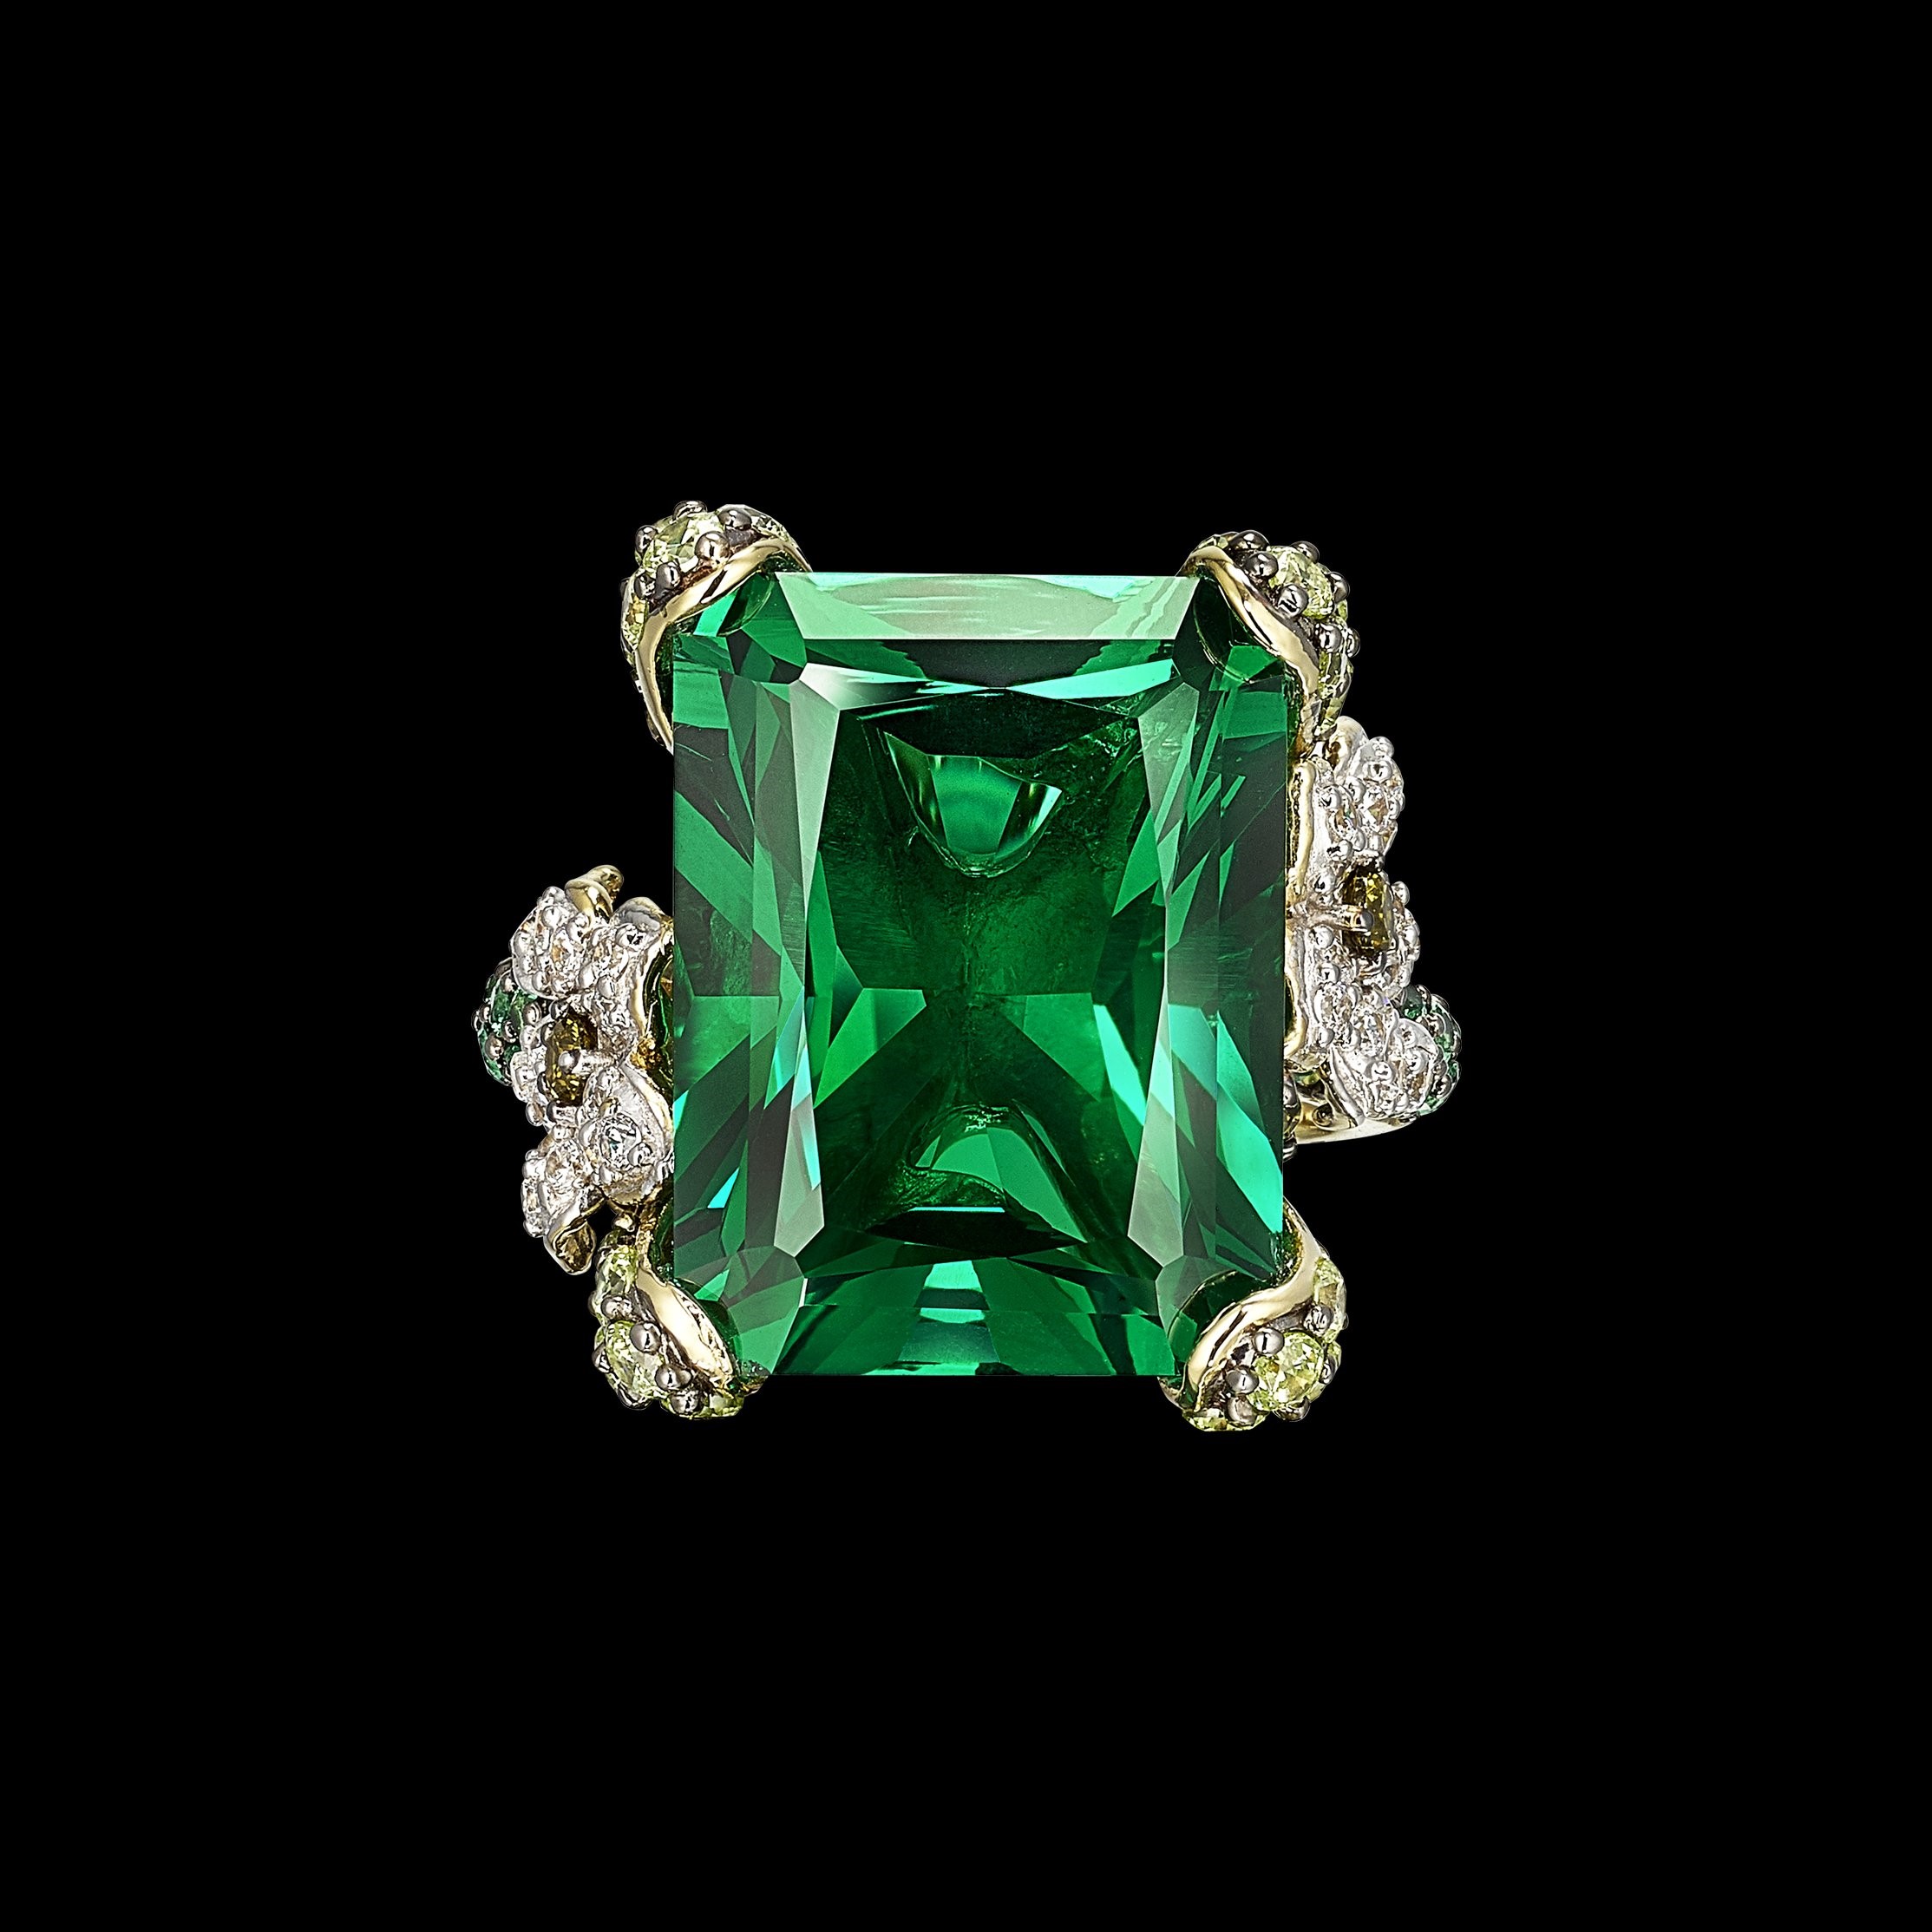 سنگ زمرد (Emerald) یکی از سنگ های چاکرای قلب